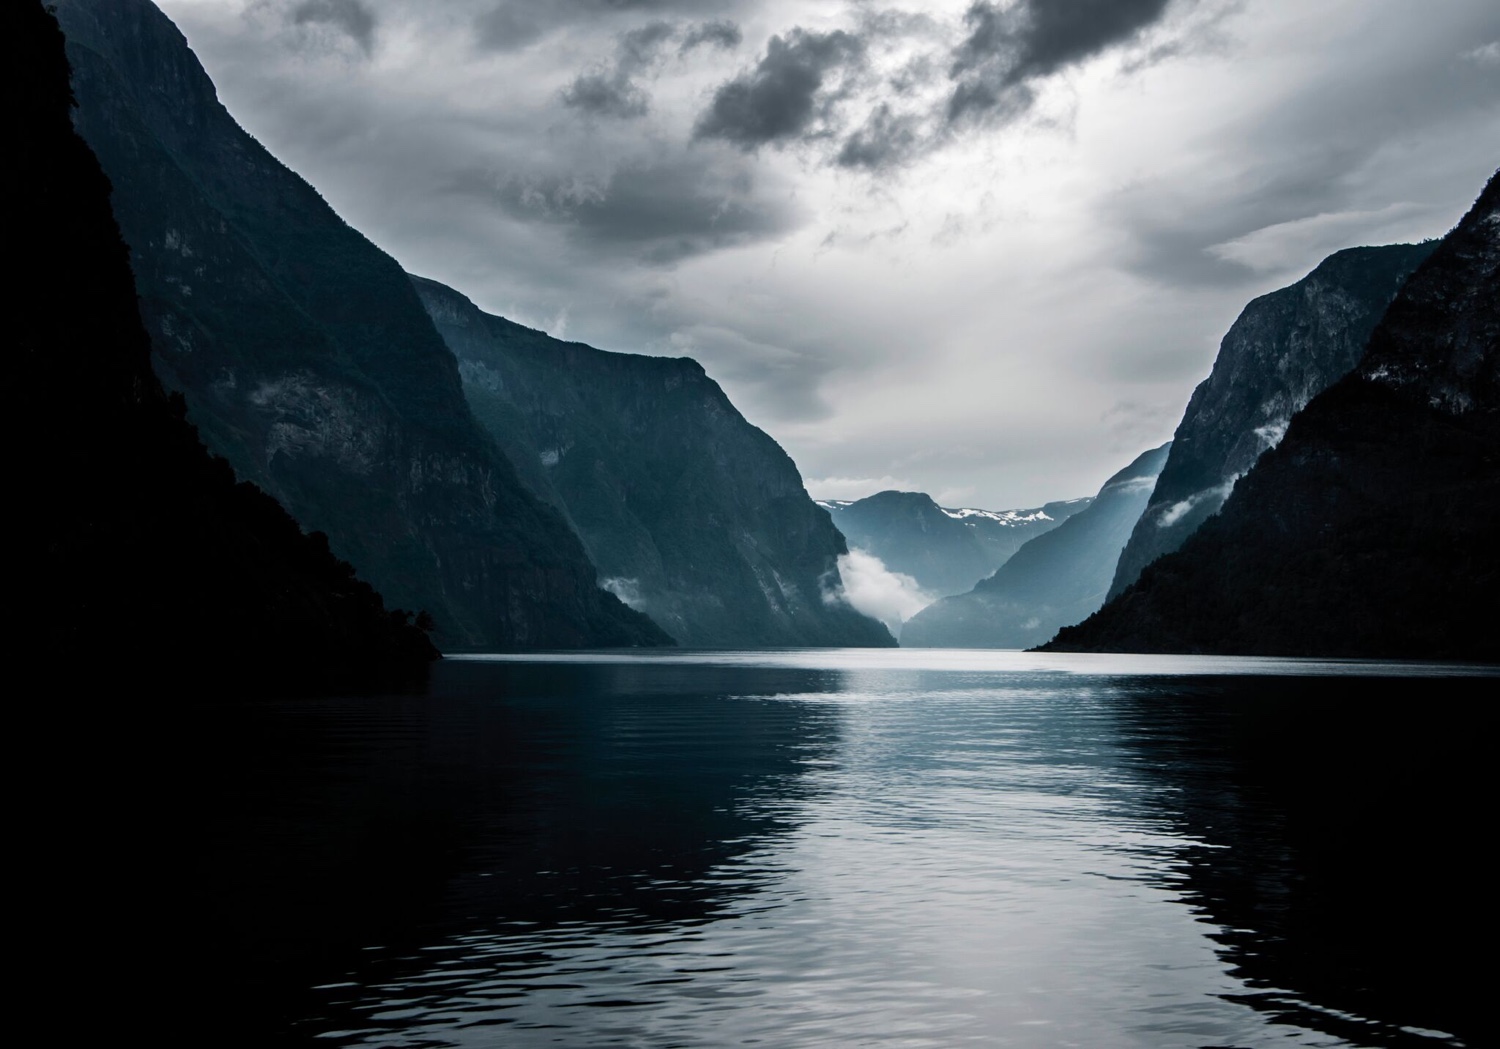 Fjord. Image © 2016 SKANDINAVISK.